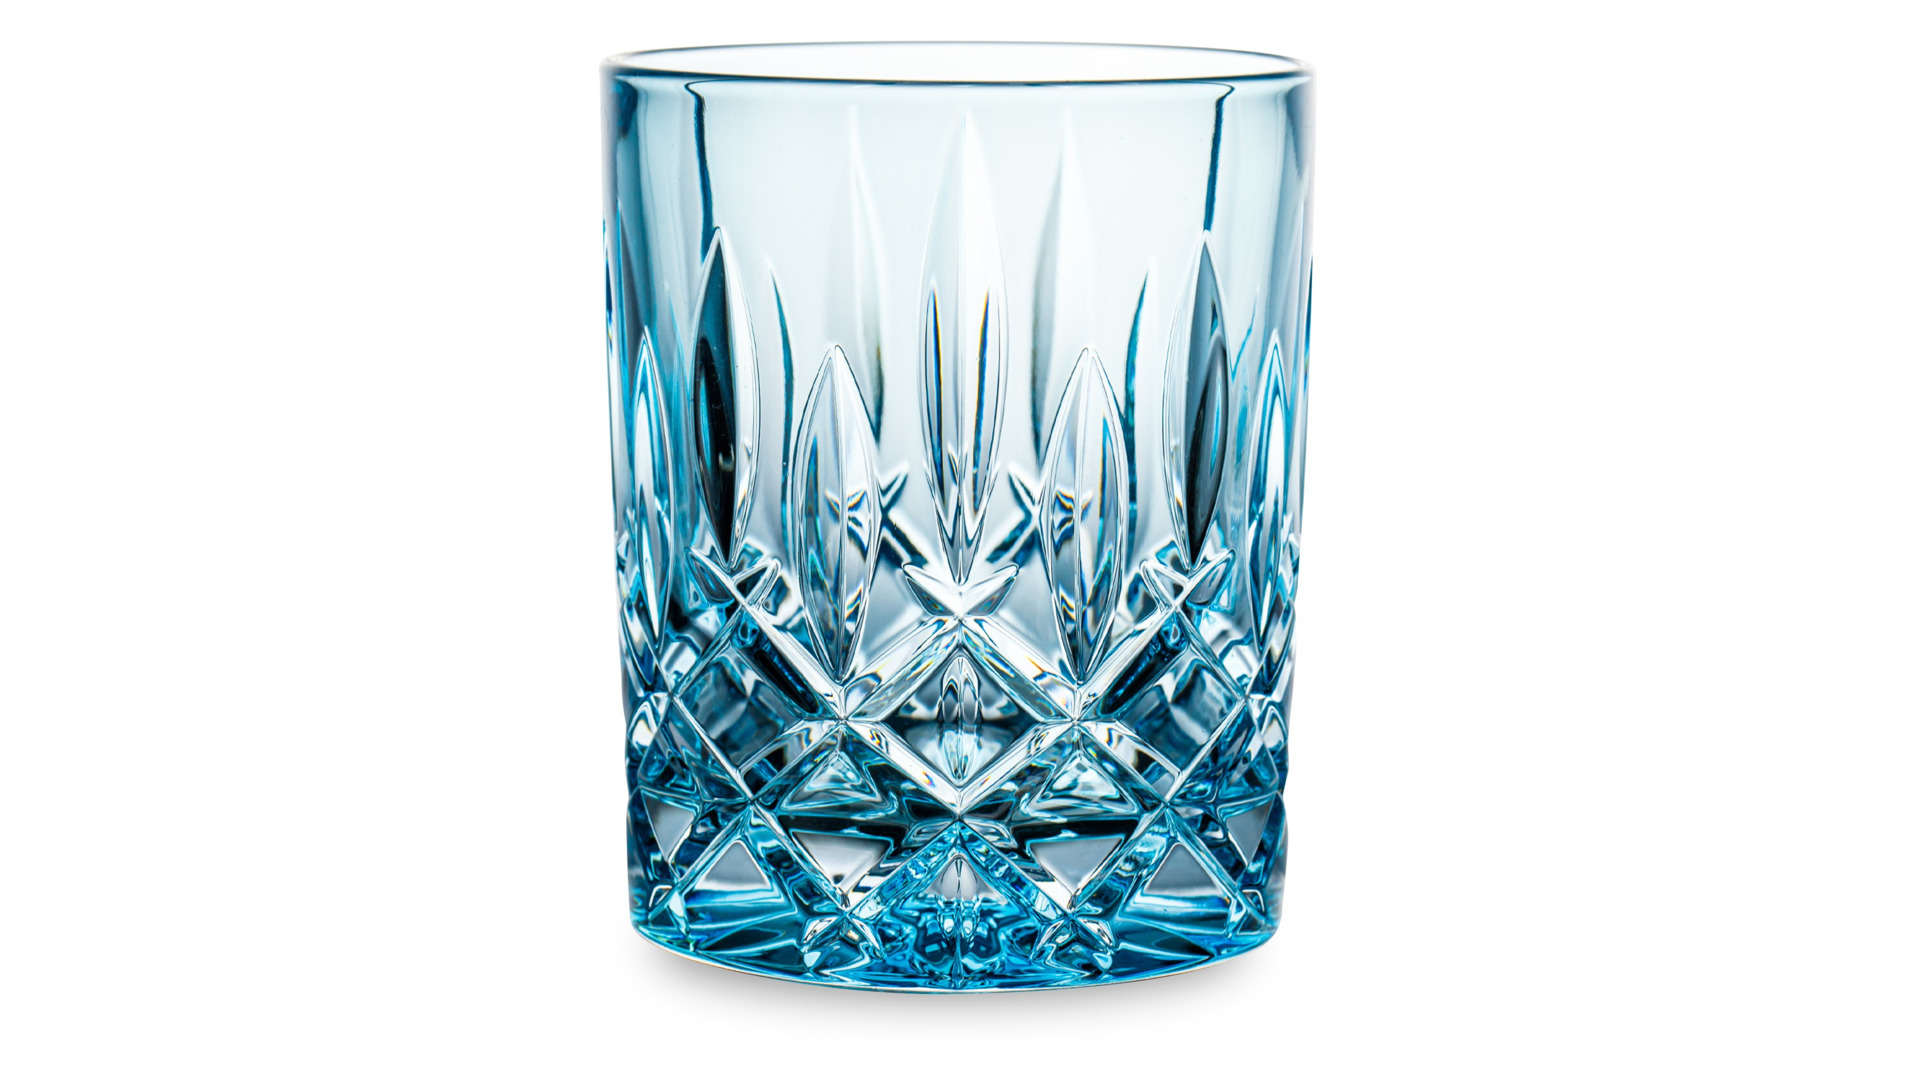 Набор стаканов для виски Nachtmann NOBLESSE COLORS 295 мл, 2 шт, стекло хрустальное, голубой, п/к